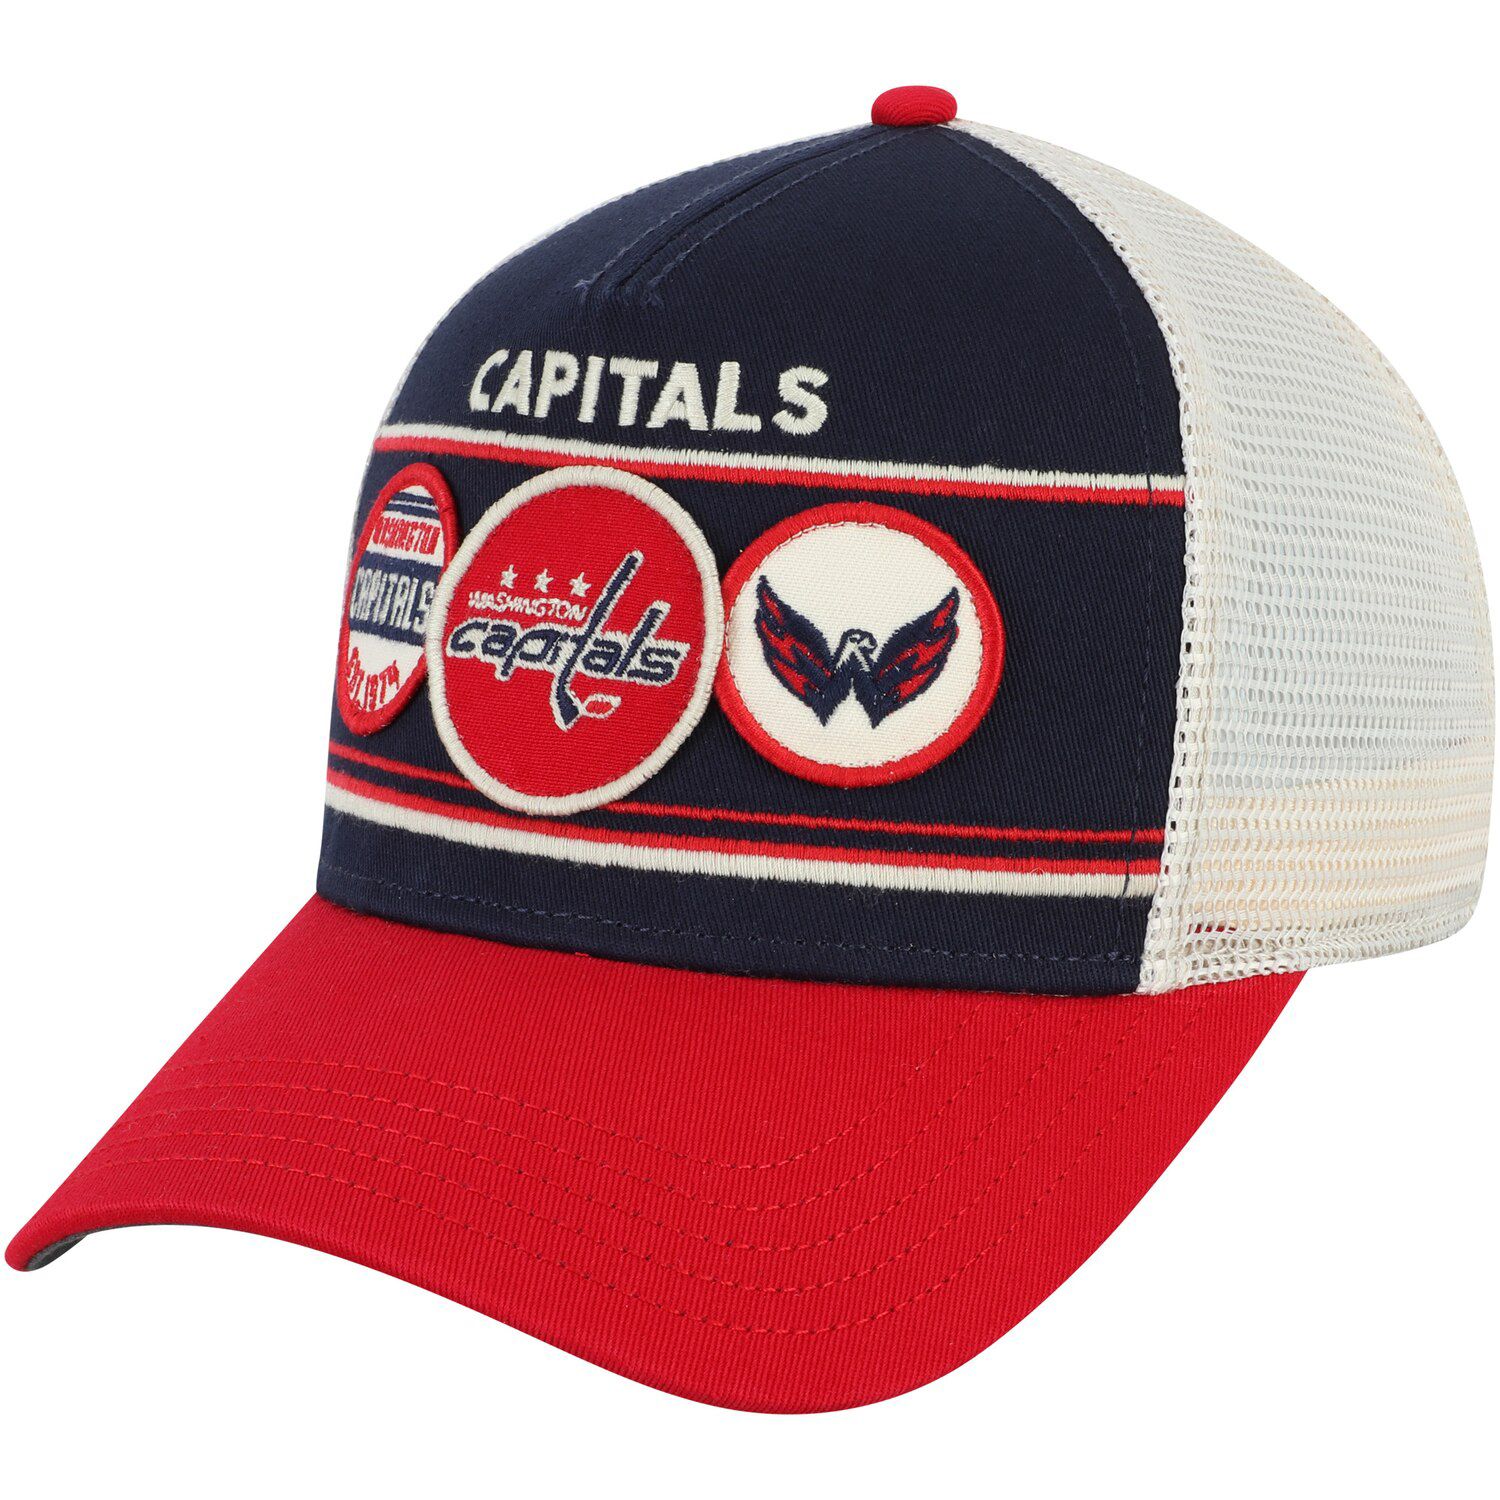 capitals baseball hat